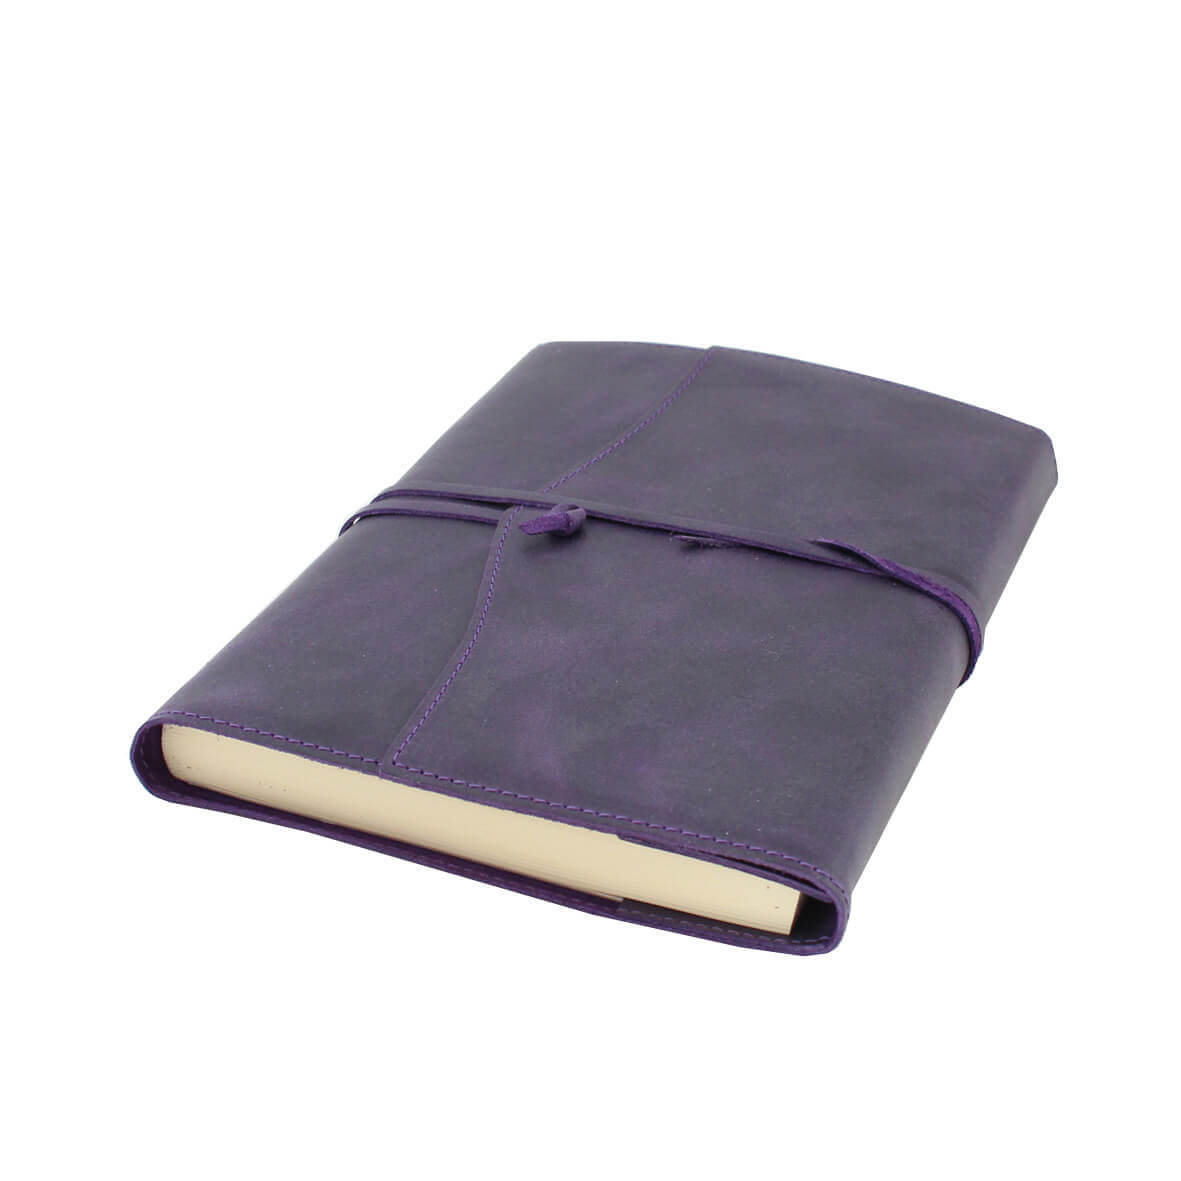 Schurk alliantie in de rij gaan staan Leren notitieboek navulbaar Amalfi aubergine | paars kopen